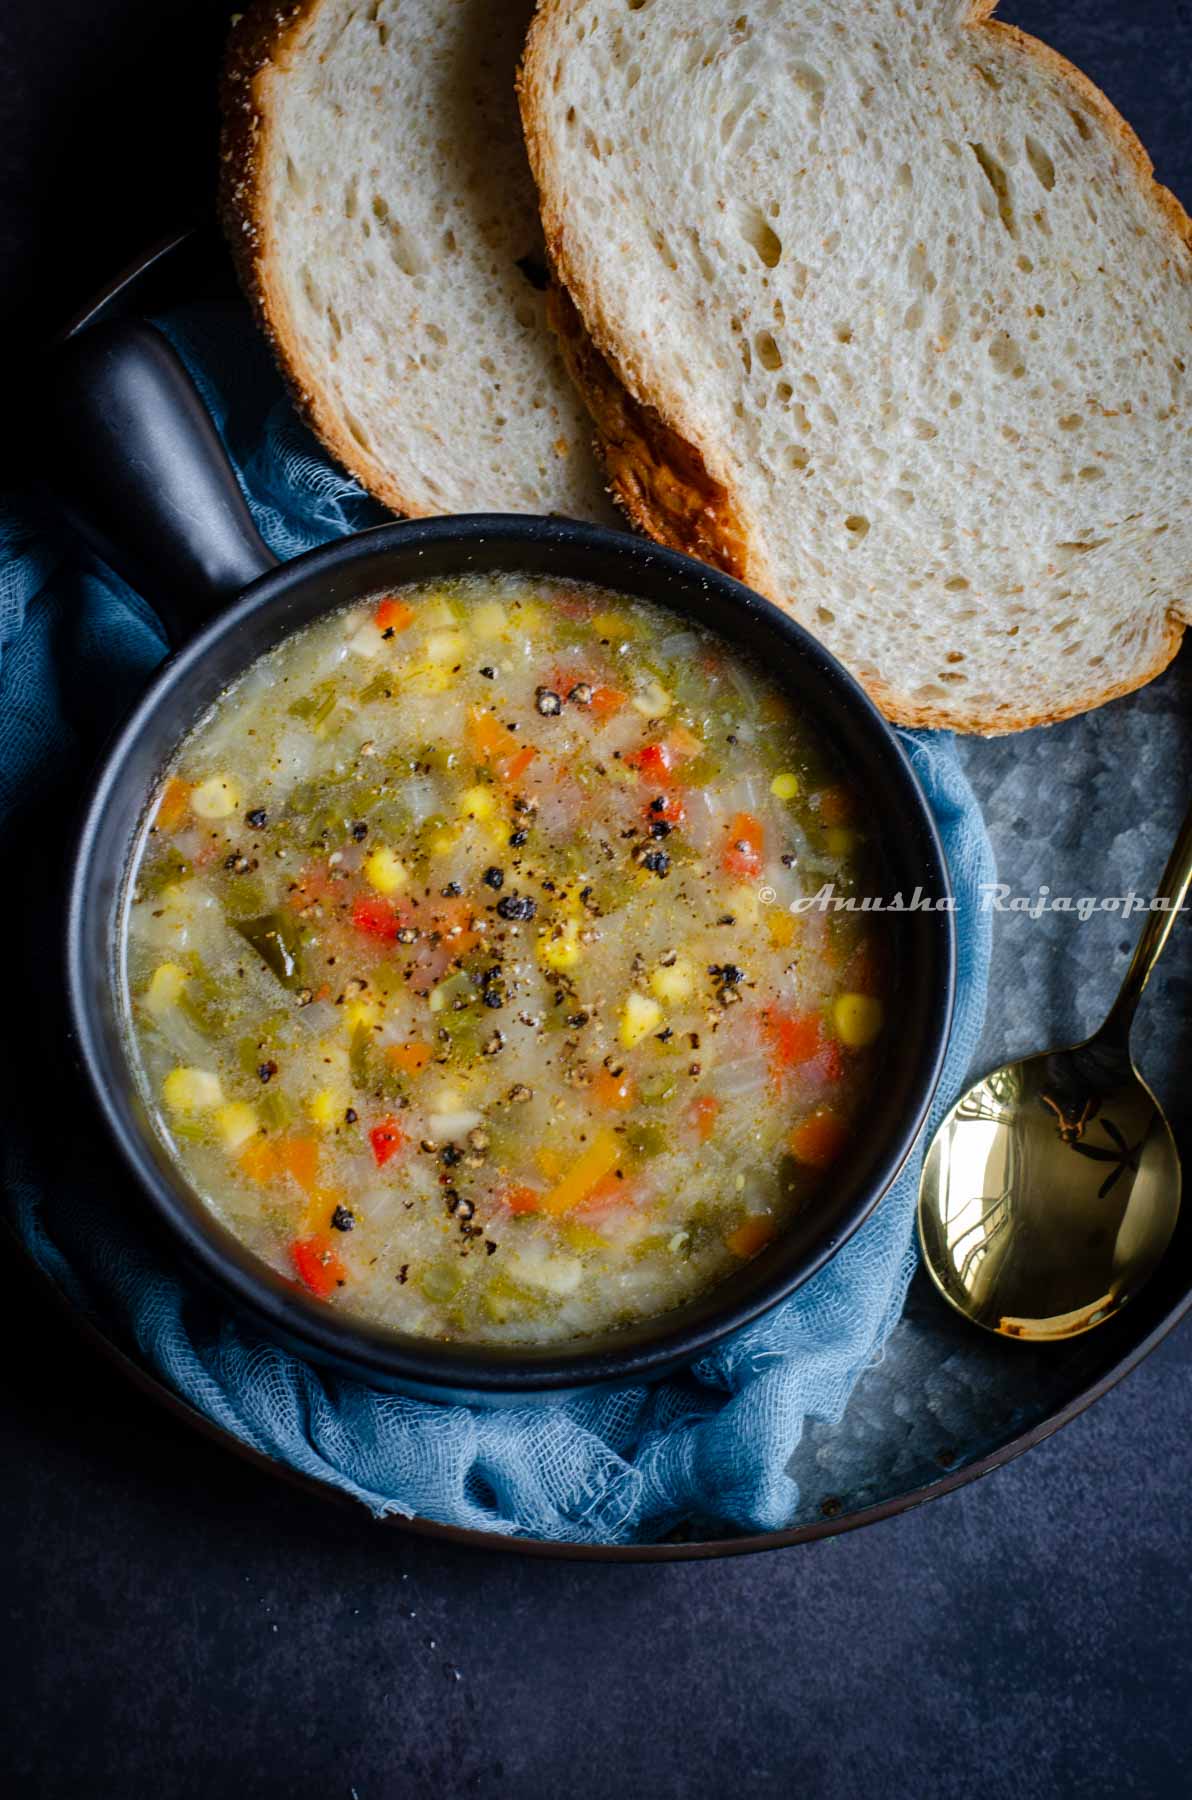 https://www.tomatoblues.com/wp-content/uploads/2022/11/Easy-Instant-Pot-Vegetable-Soup-2.jpg